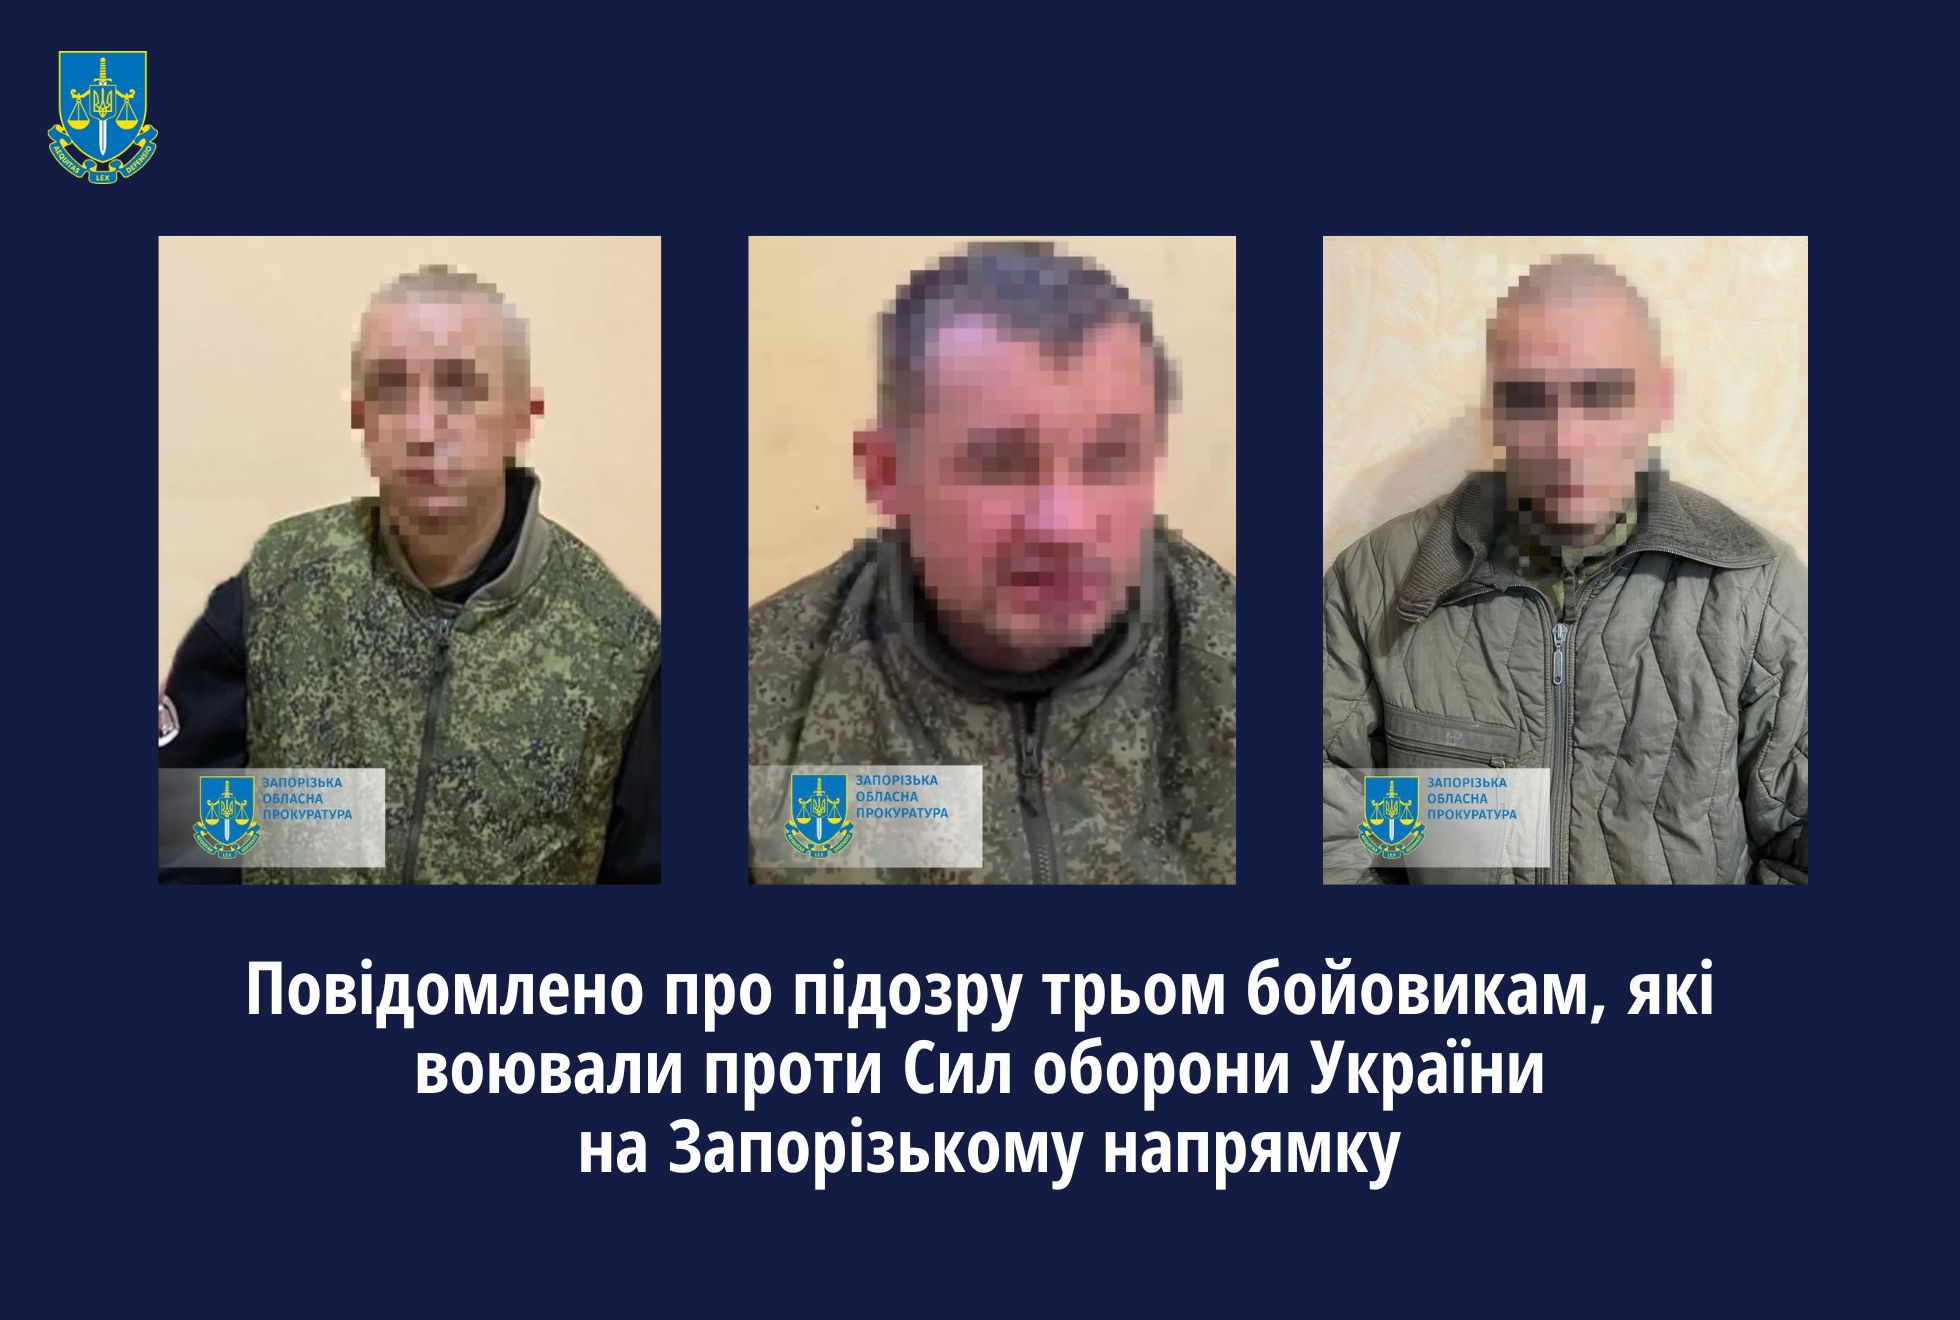 Повідомлено про підозру трьом бойовикам, які воювали проти Сил оборони України на Запорізькому напрямку